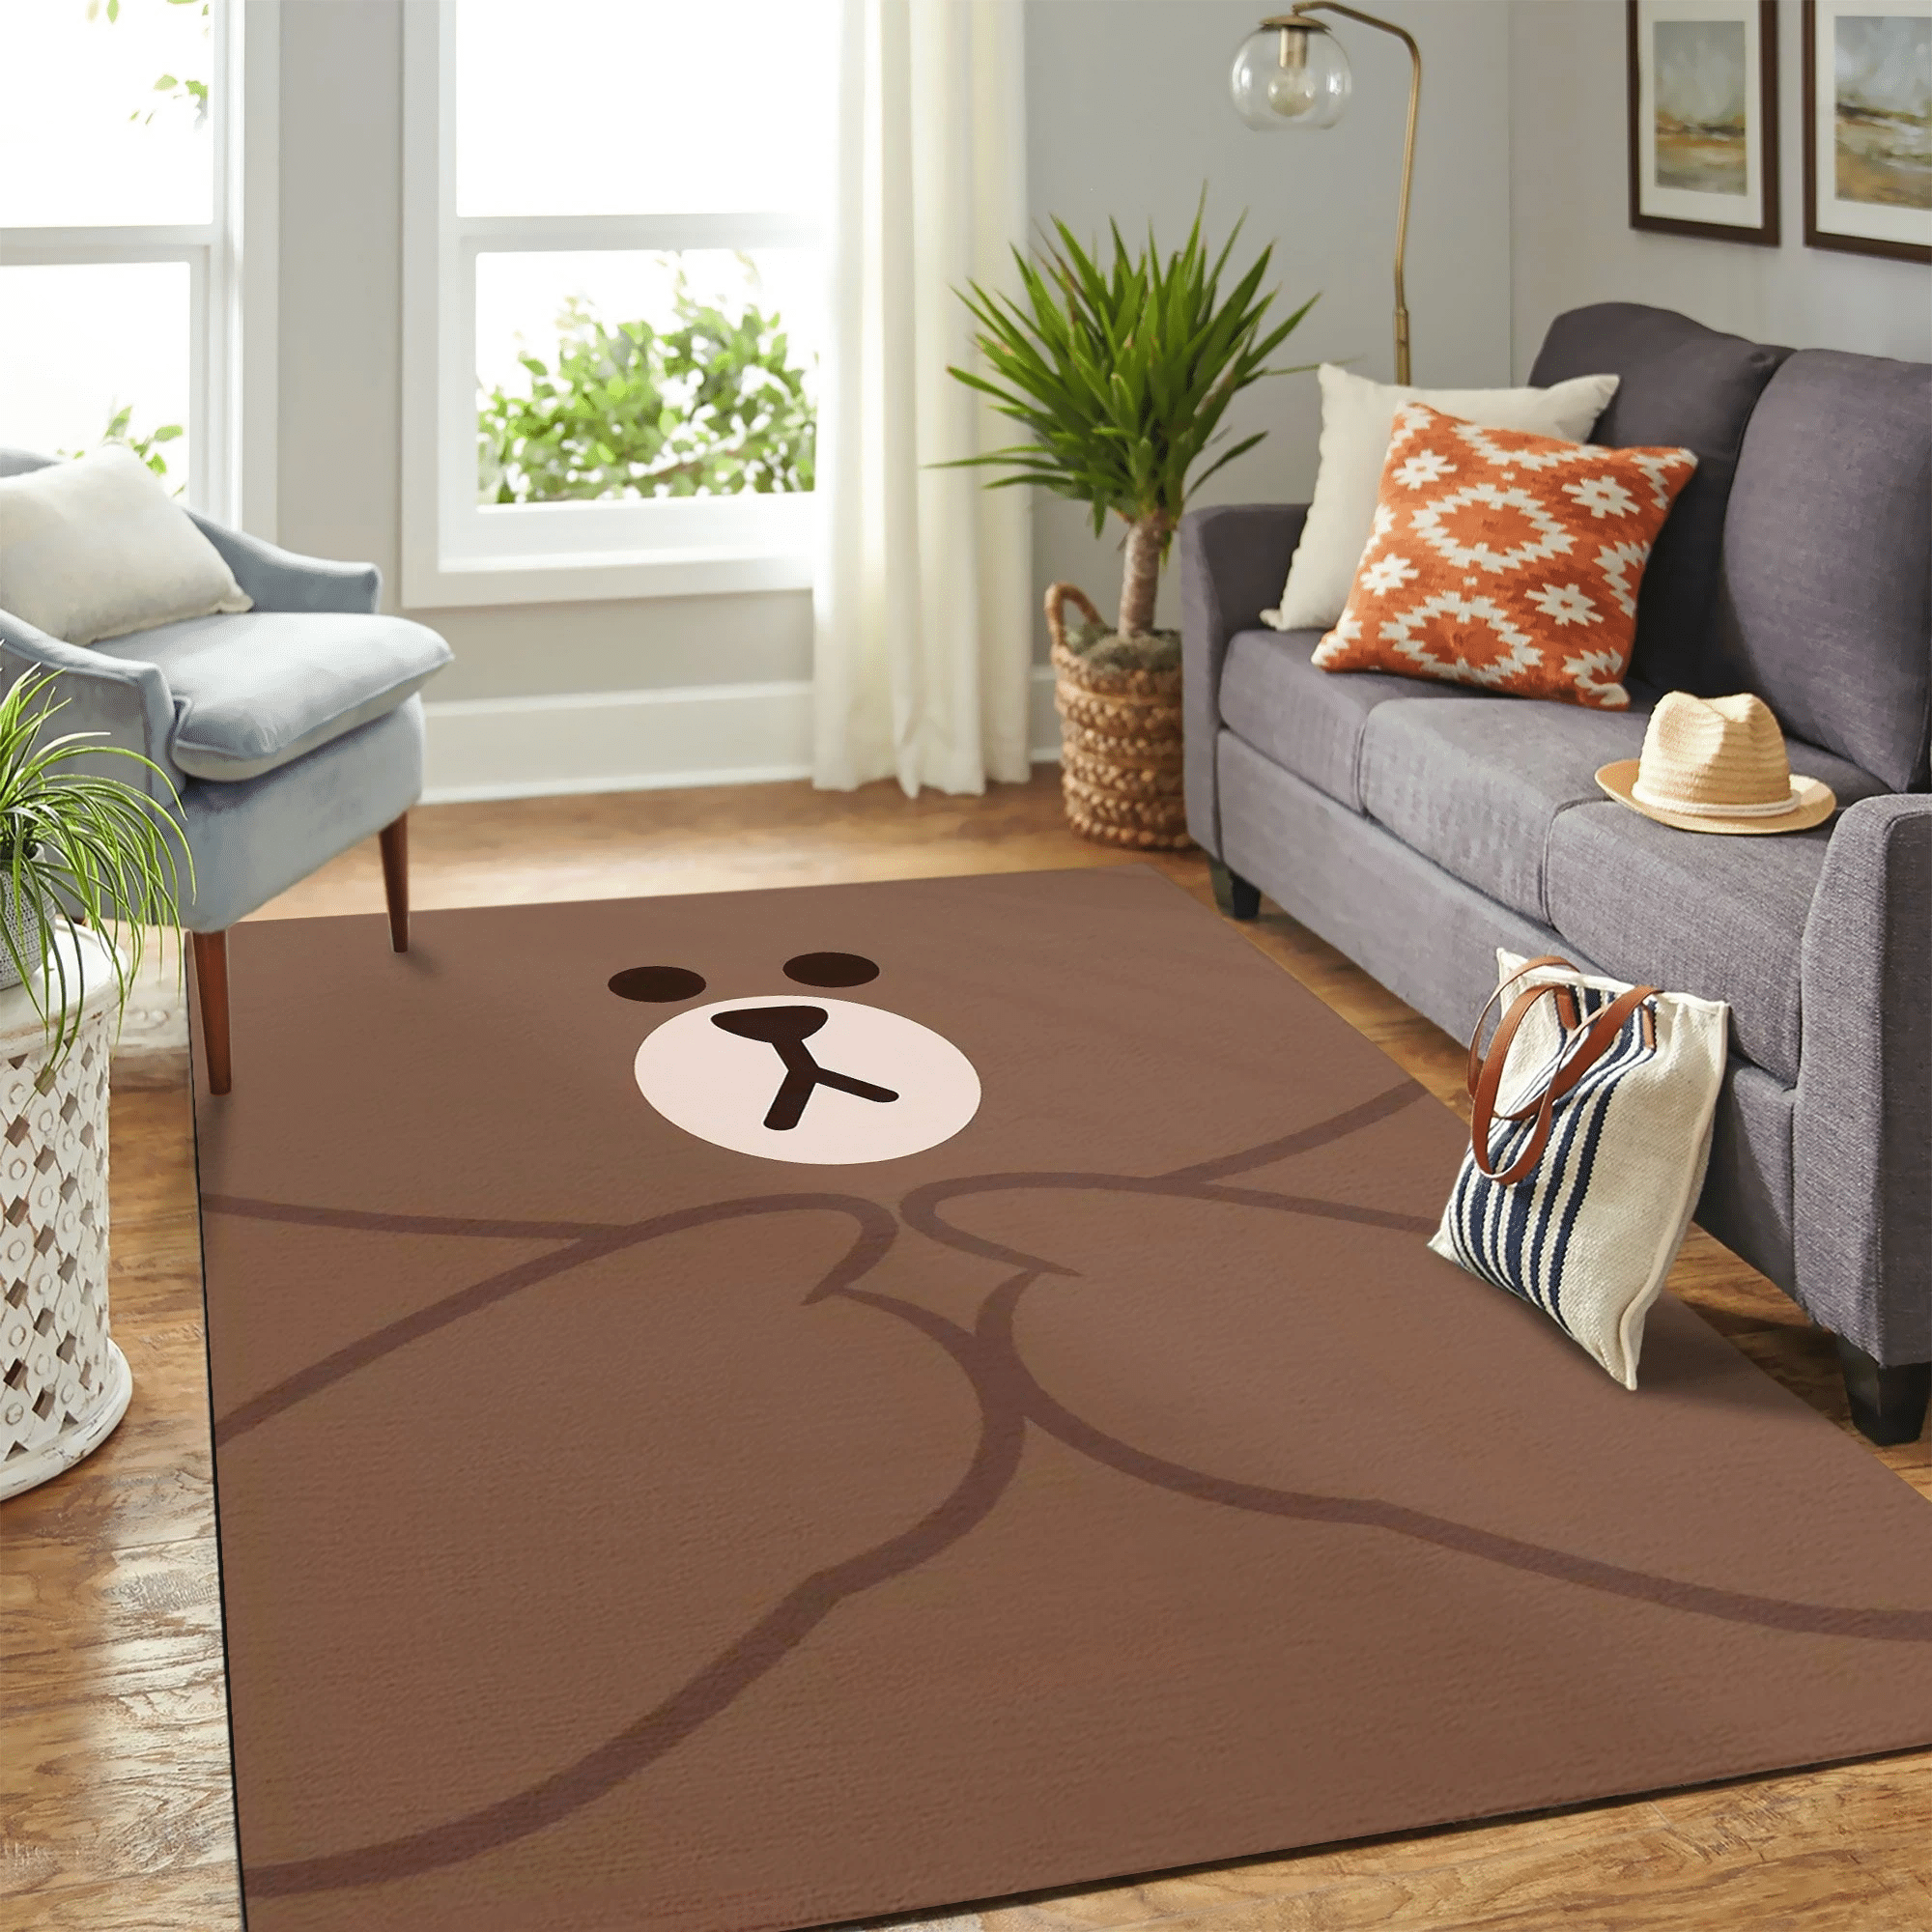 Korean Brown Bear Carpet Floor Area Rug Chrismas Gift - Indoor Outdoor Rugs